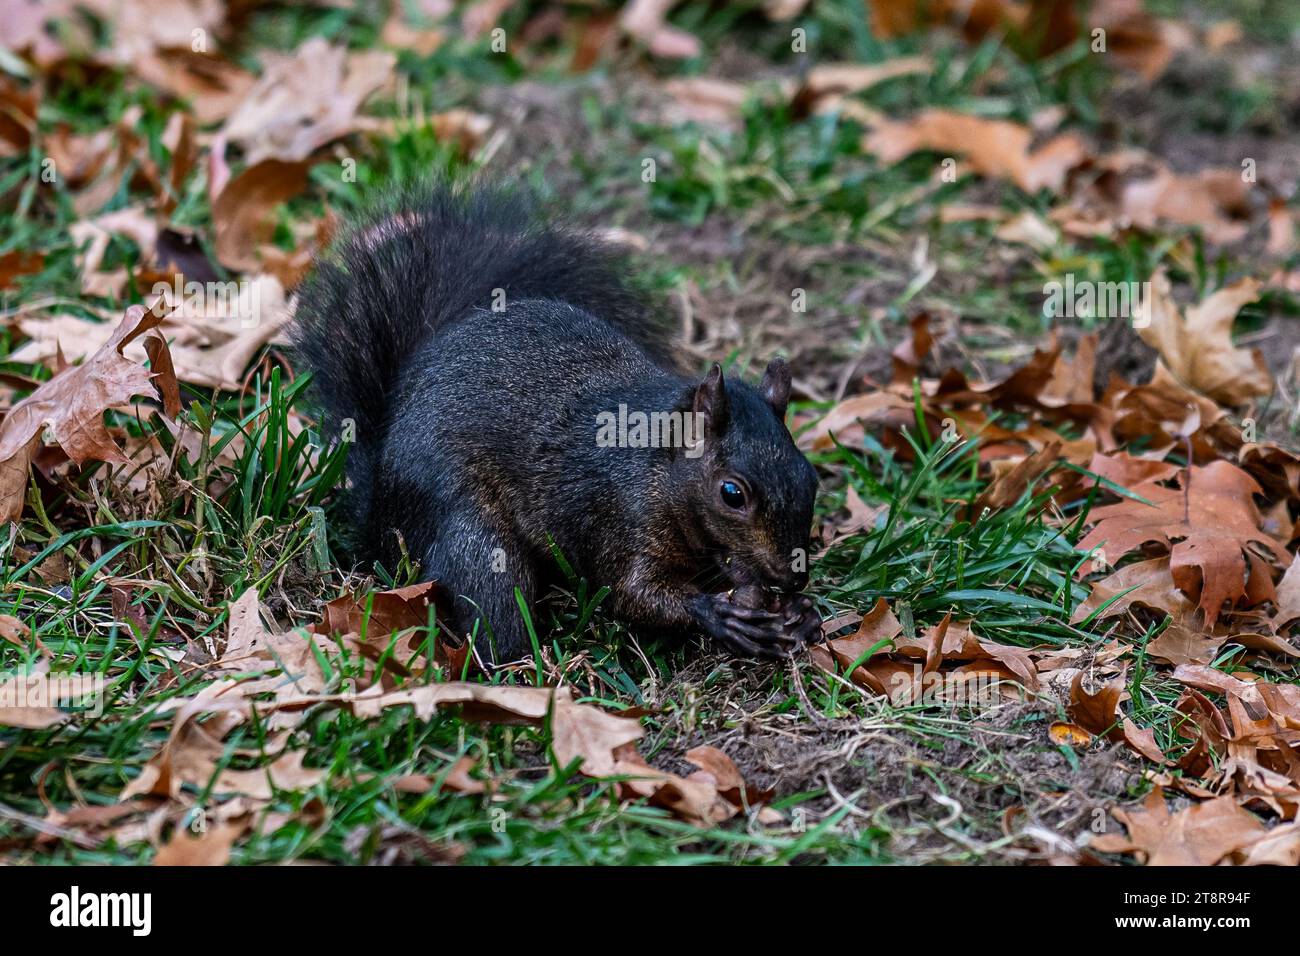 Un écureuil brun foncé sauvage qui recherche de la nourriture dans un parc public, tenant une noix dans ses pattes Banque D'Images